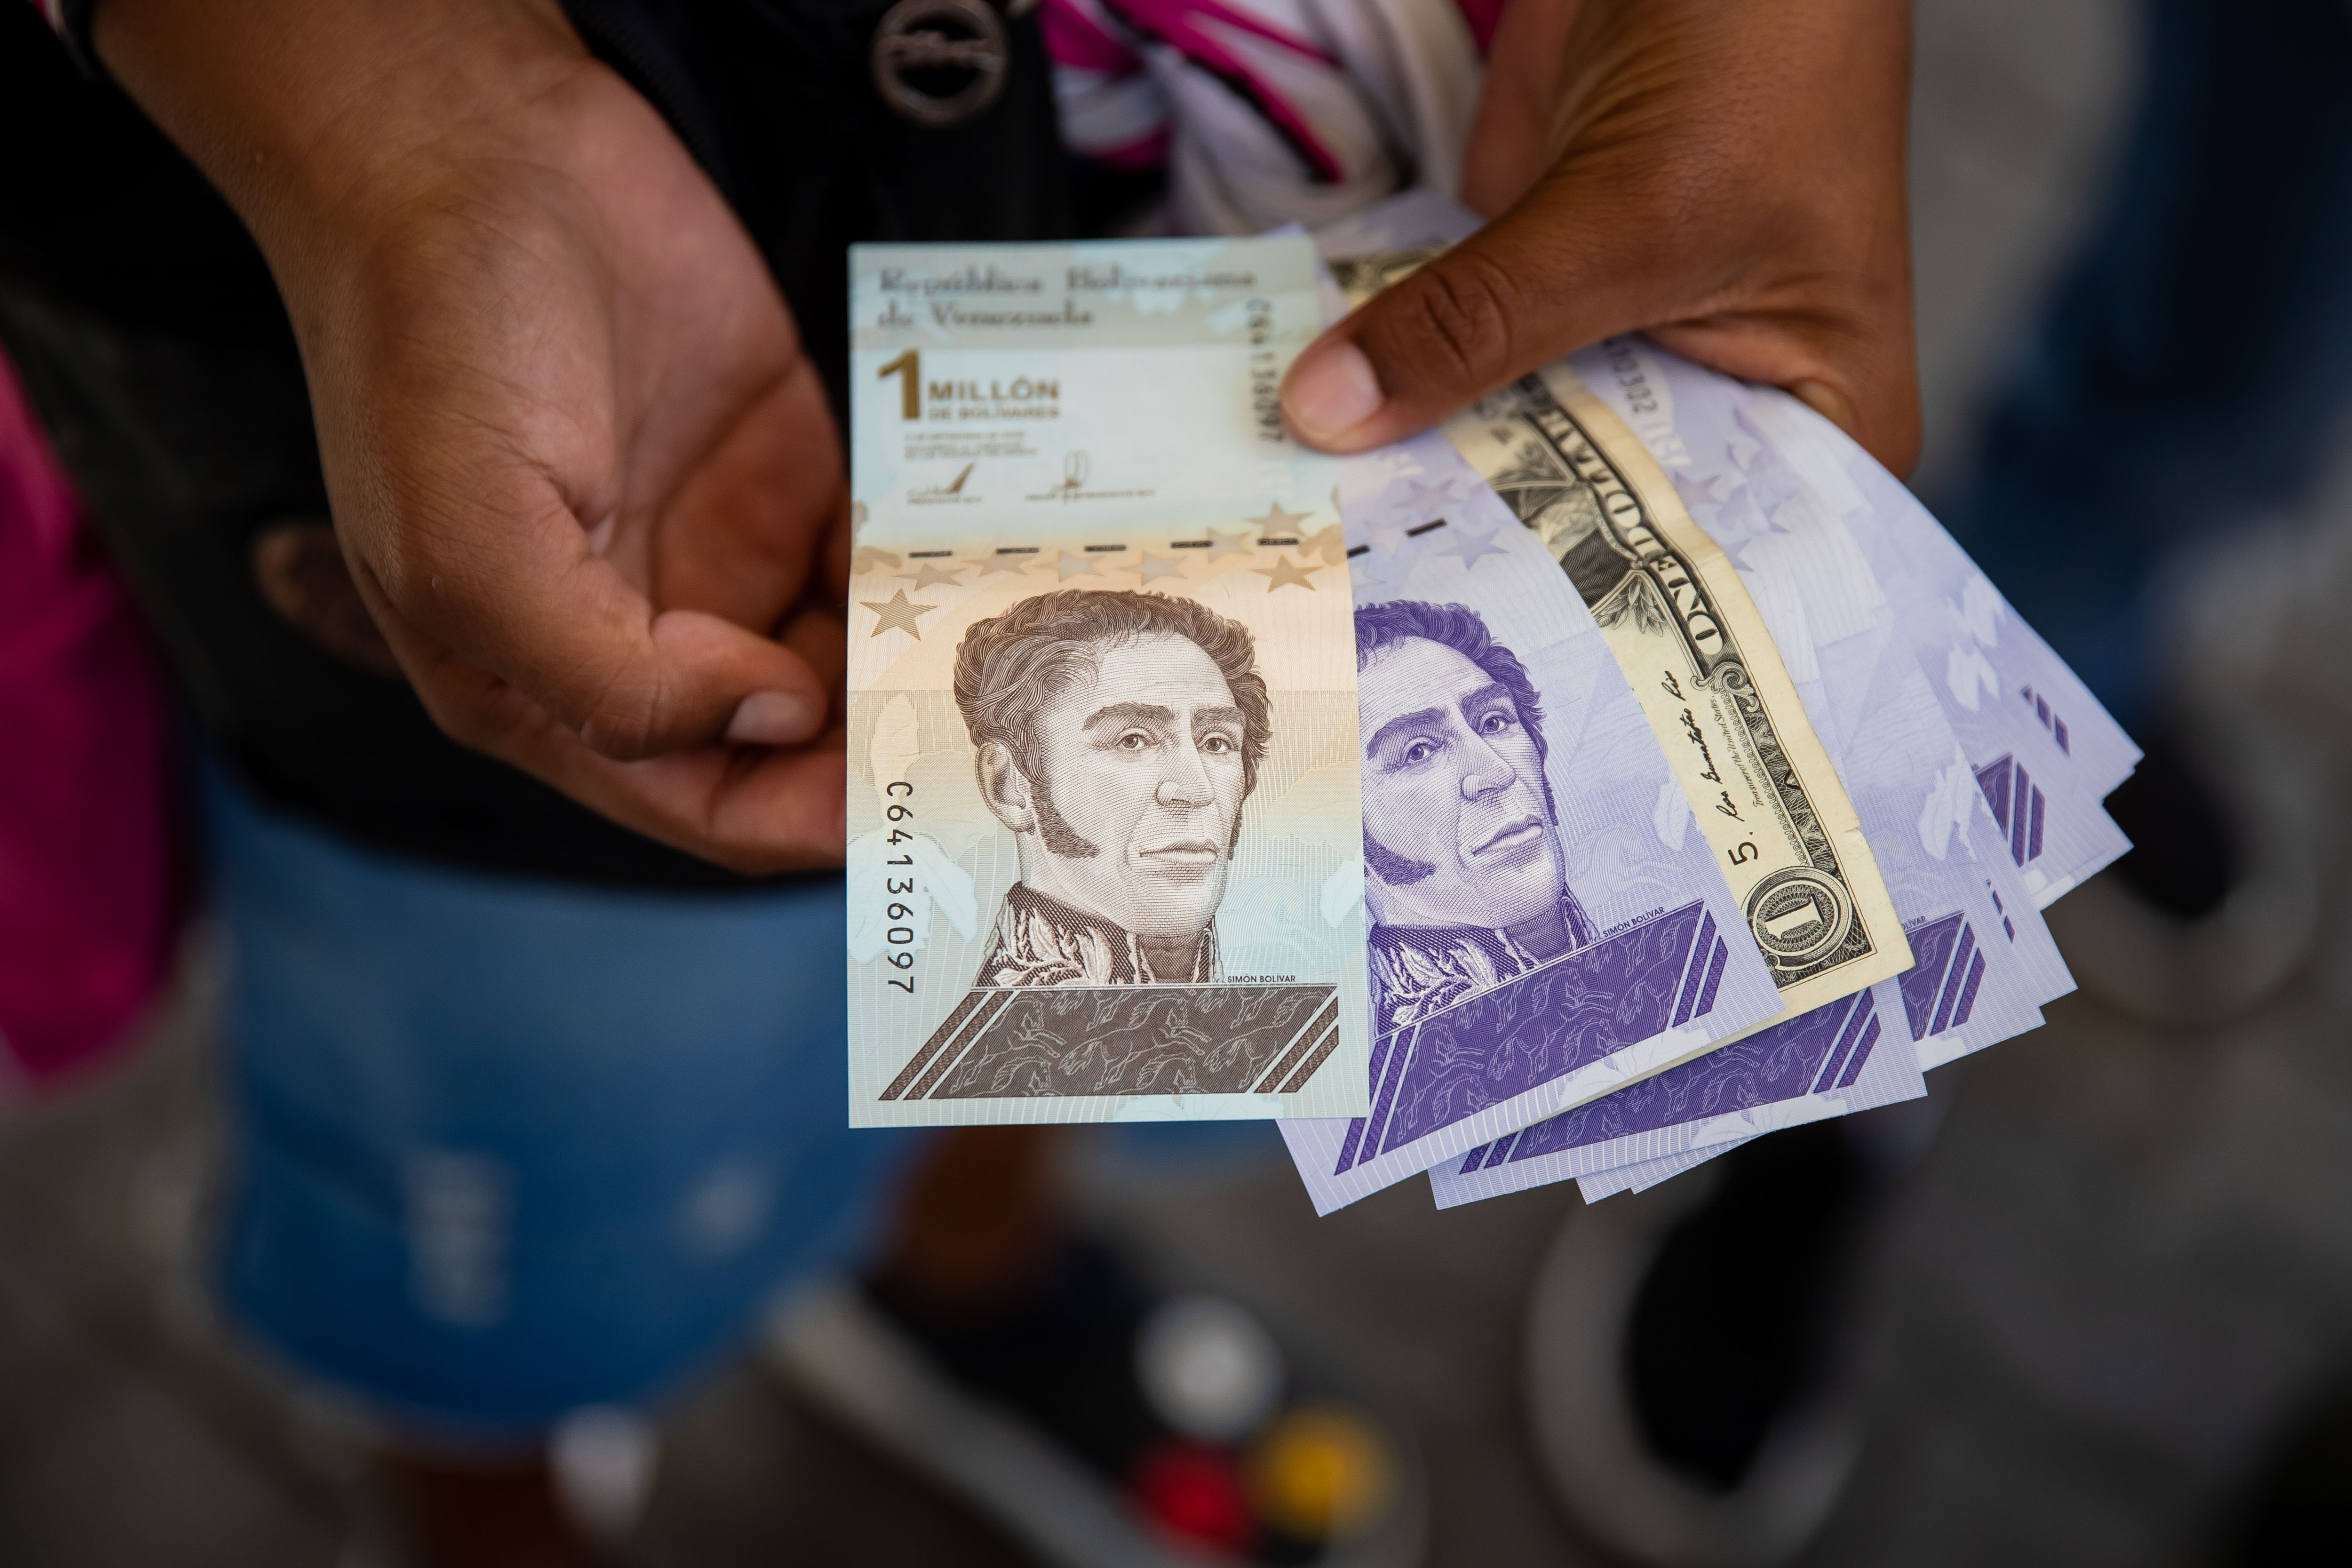 “Estabilización en el foso”: Proyectan crecimiento económico de 4% en Venezuela